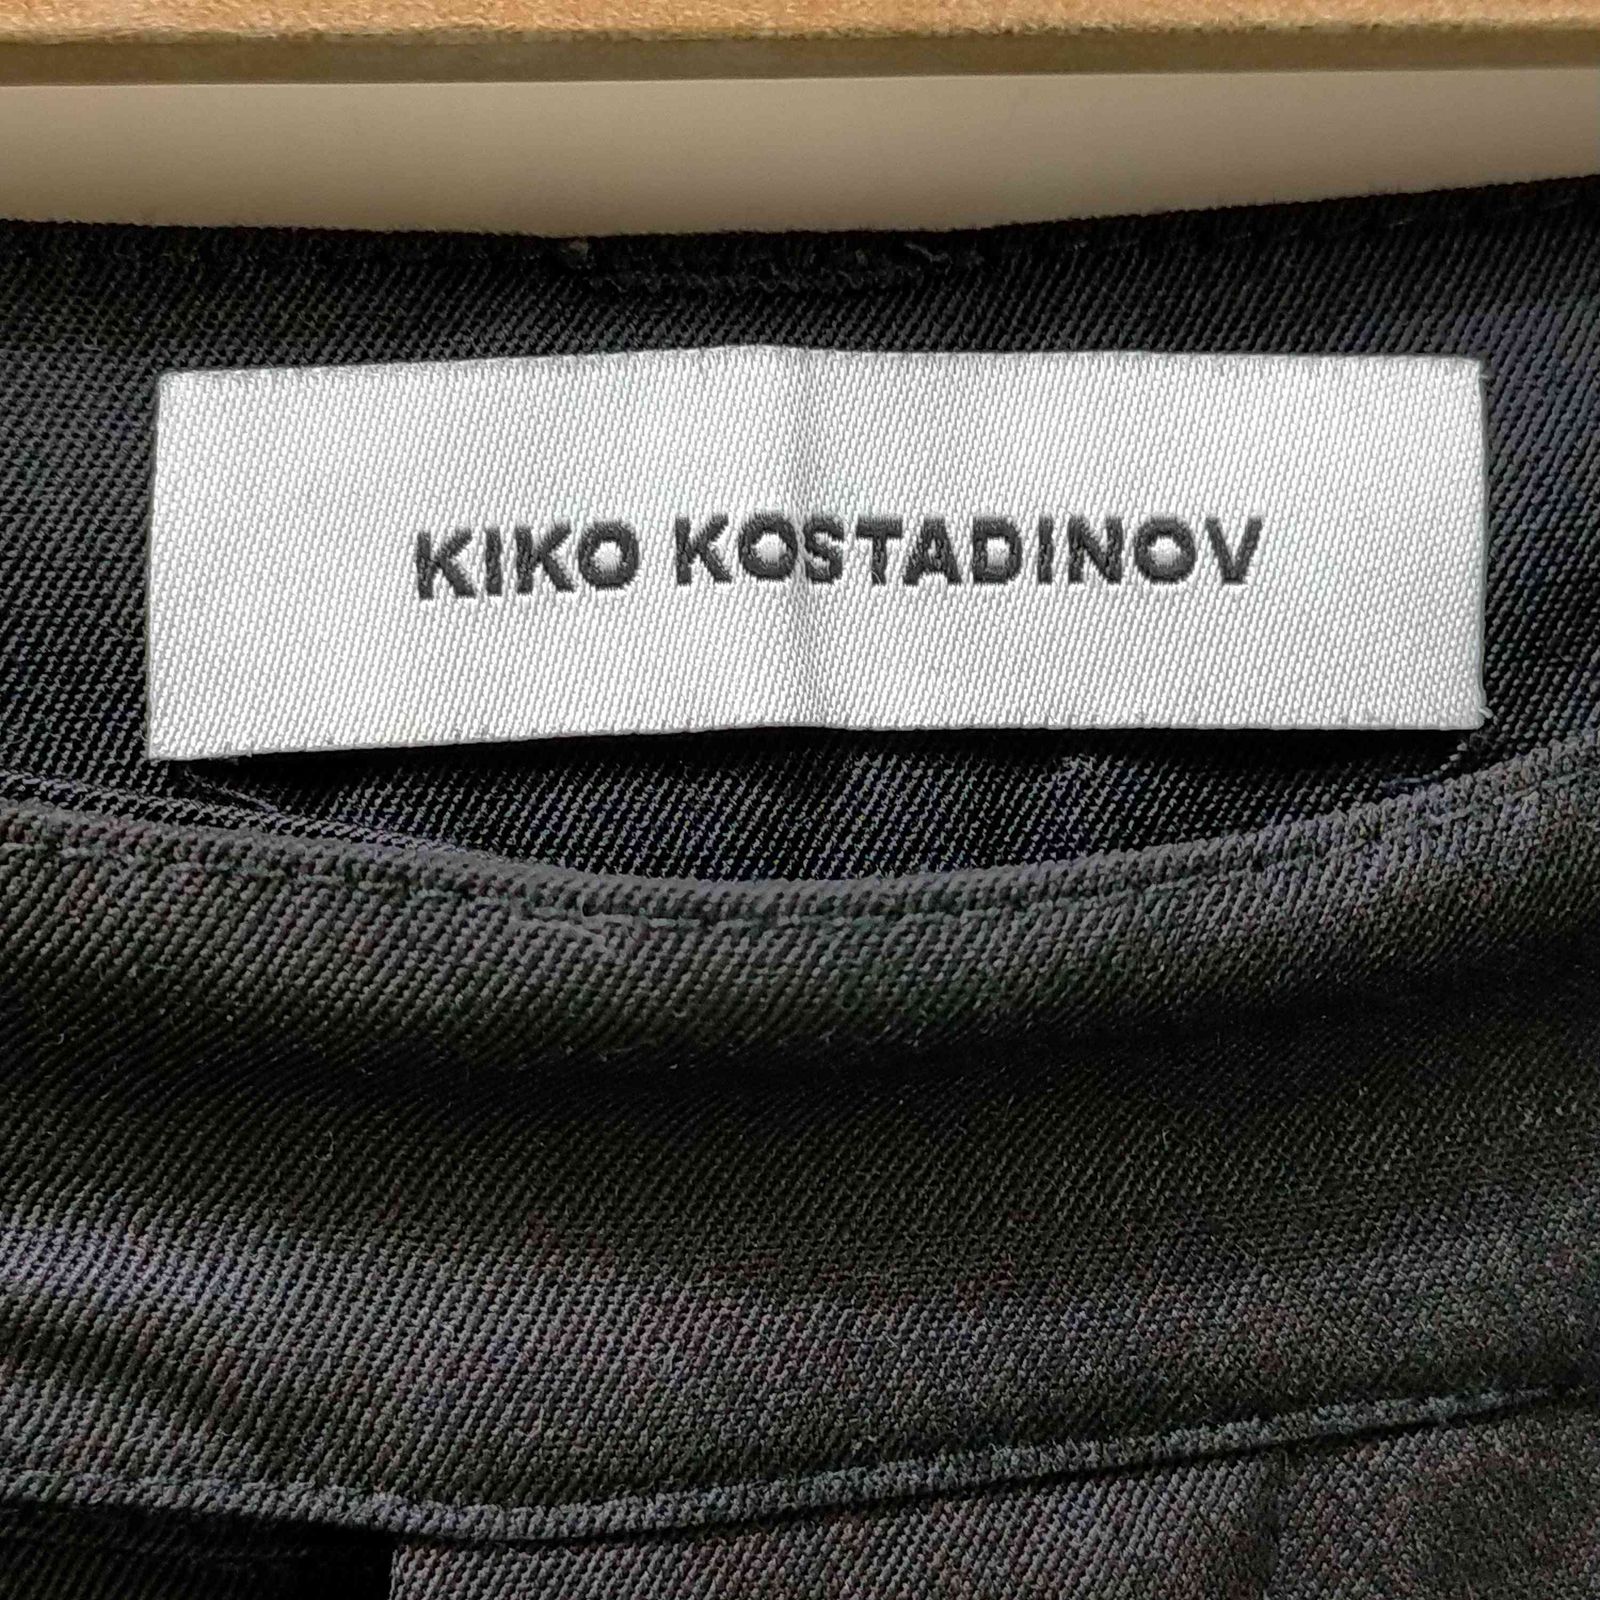 キココスタディノフ Kiko kostadinov KK.Trouser.03鮮魚出品商品